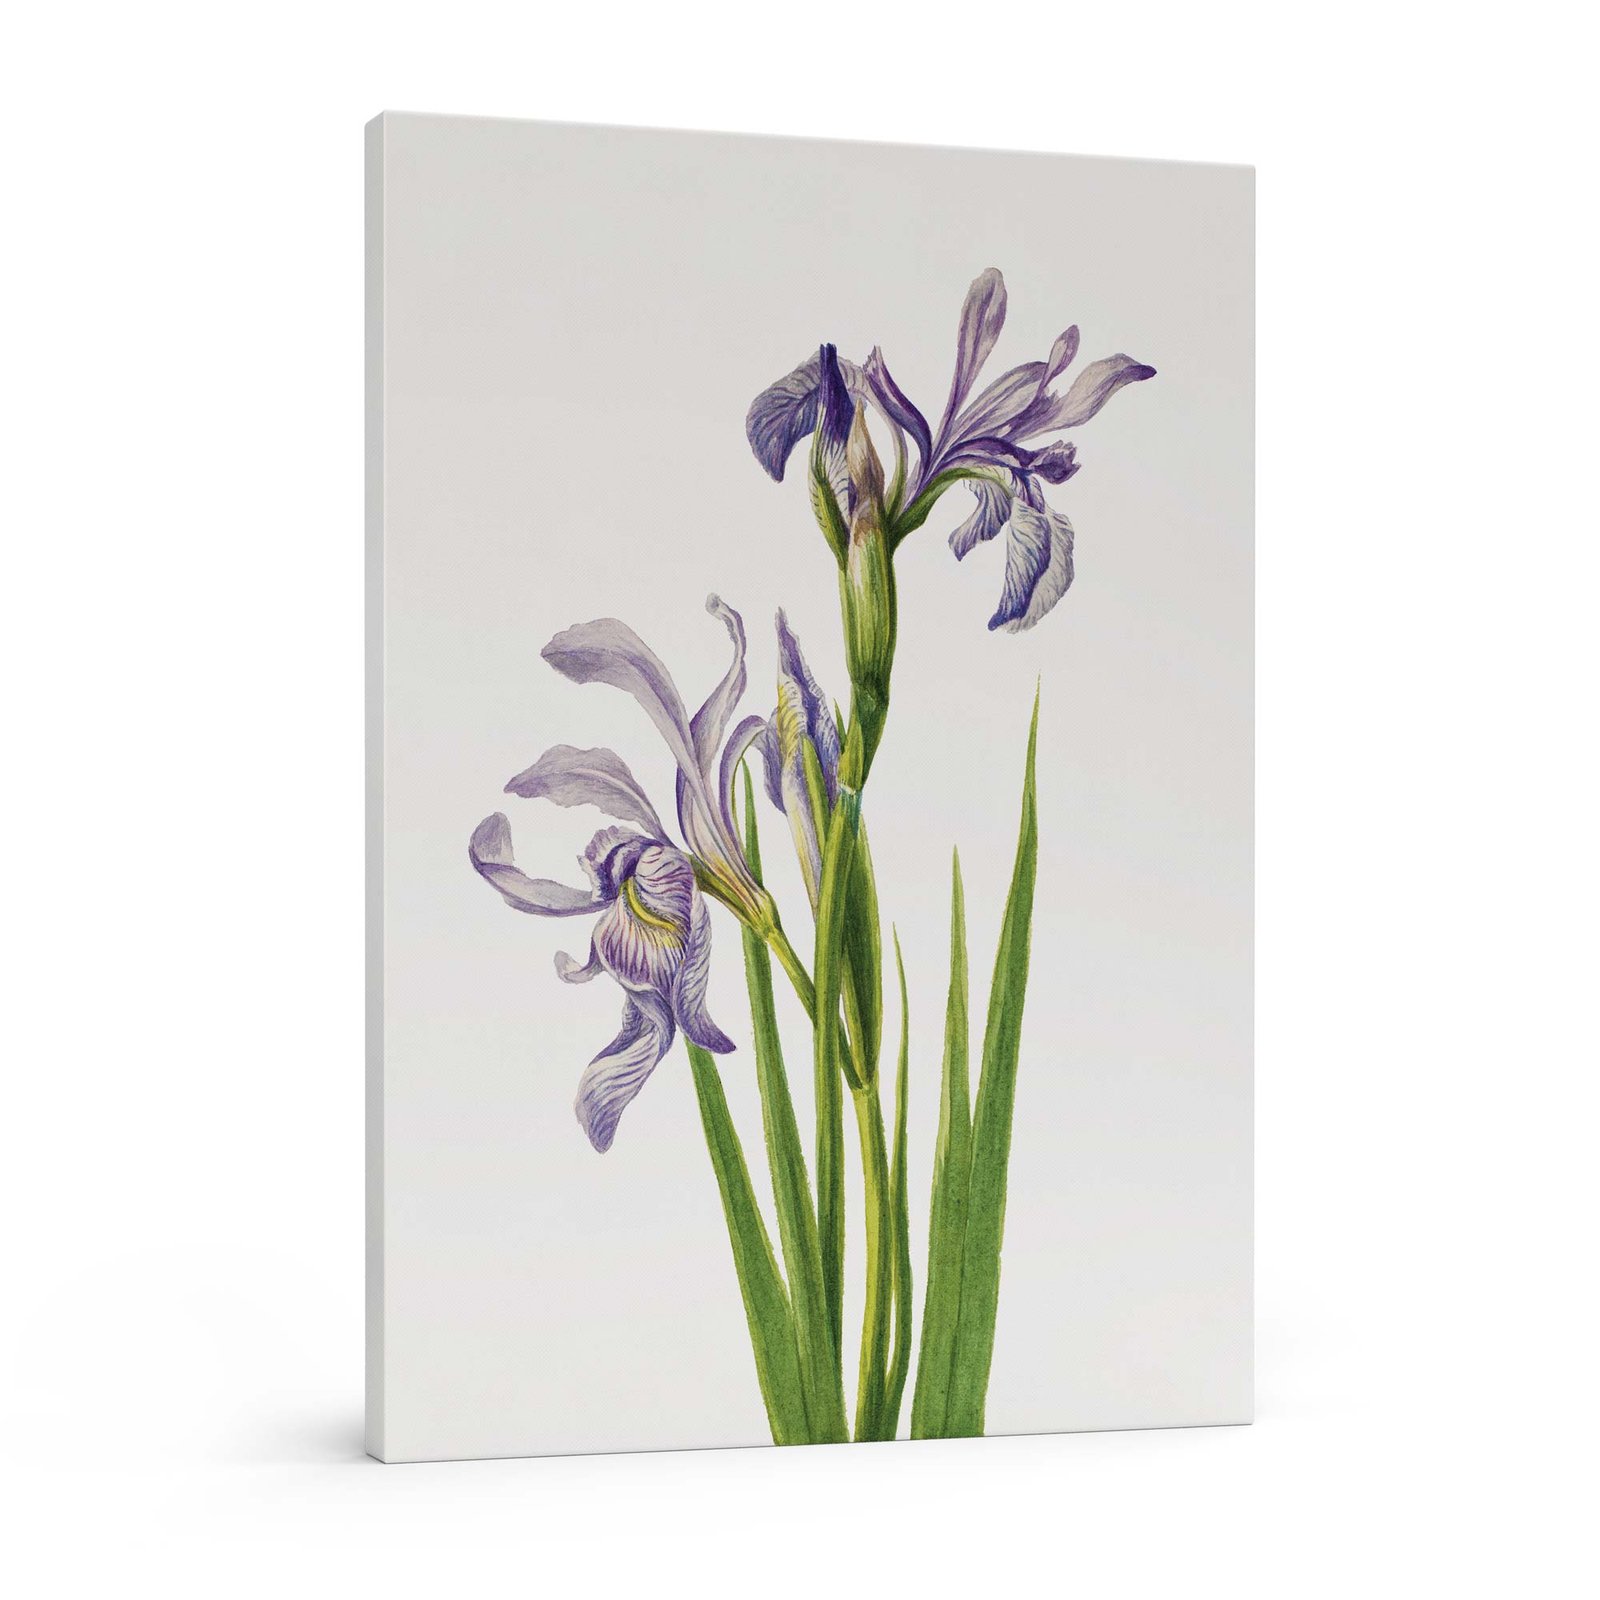 259-paveikslai internetu - Vakarų mėlynasis irisas - Mary Vaux Walcott